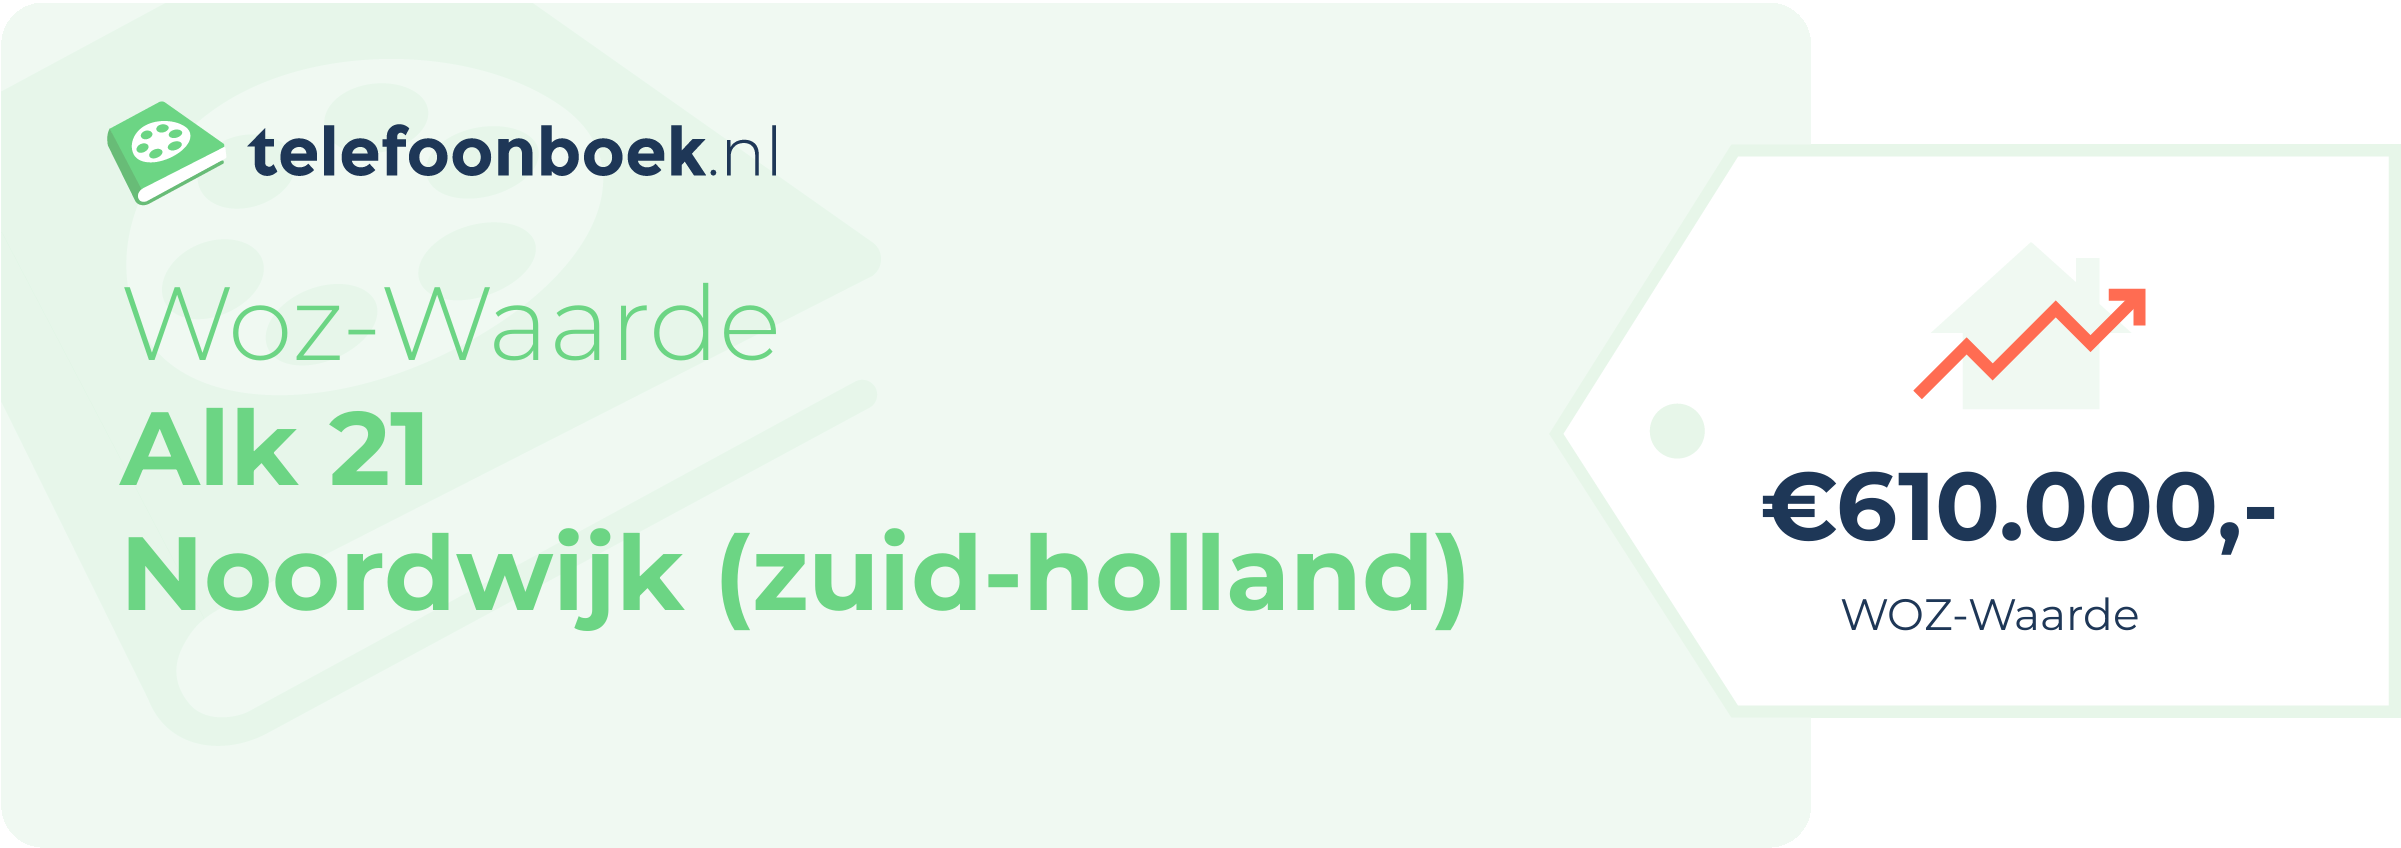 WOZ-waarde Alk 21 Noordwijk (Zuid-Holland)